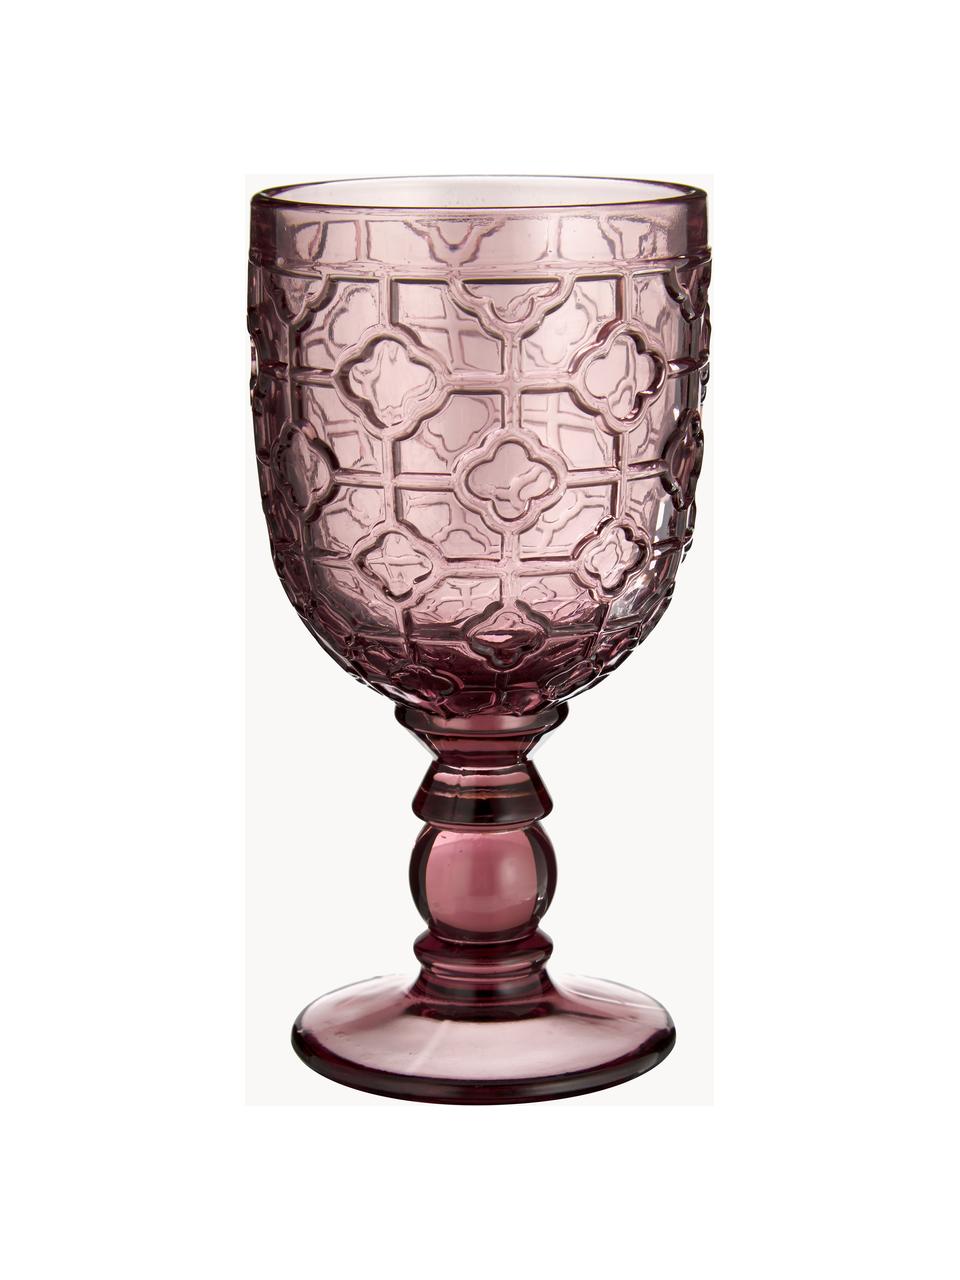 Set di 6 bicchieri da vino con motivo in rilievo Geometrie, Vetro, Multicolore, trasparente, Ø 9 x Alt. 17 cm